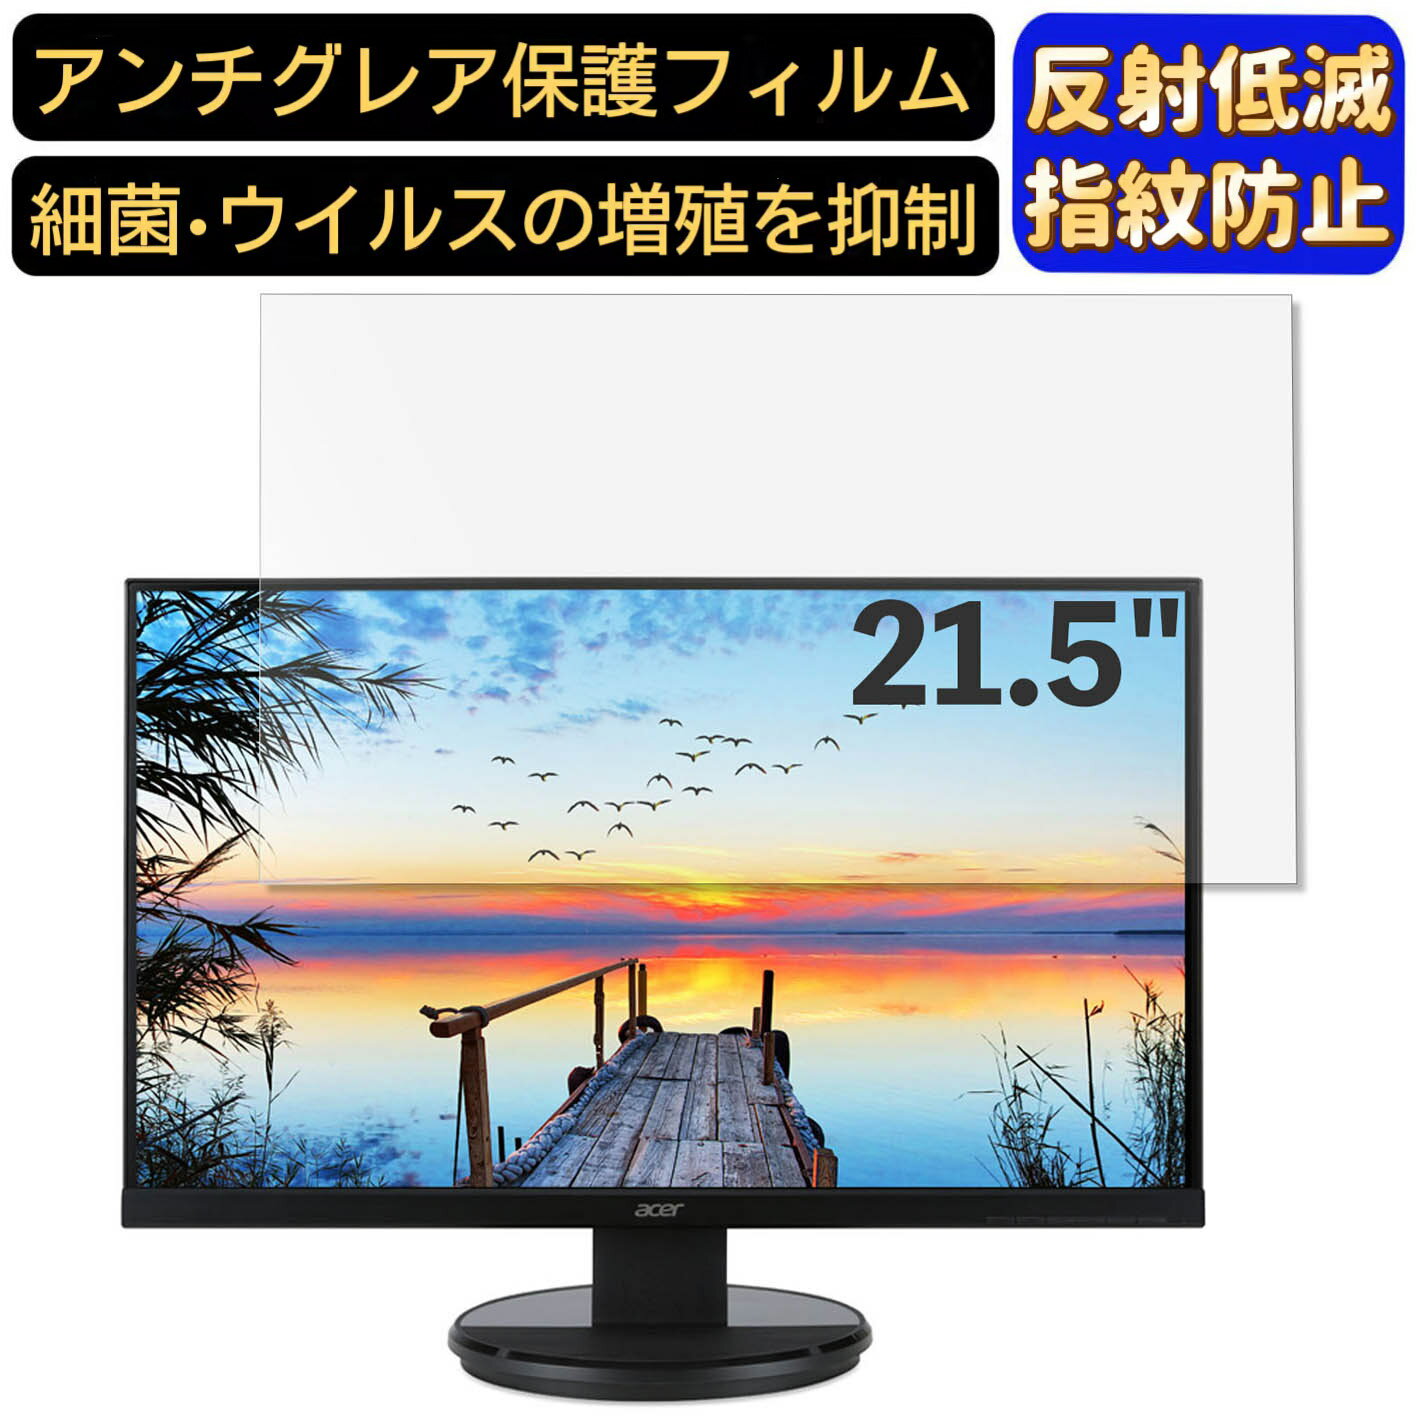 【ポイント2倍】Acer K222HQLbmid 21.5イ